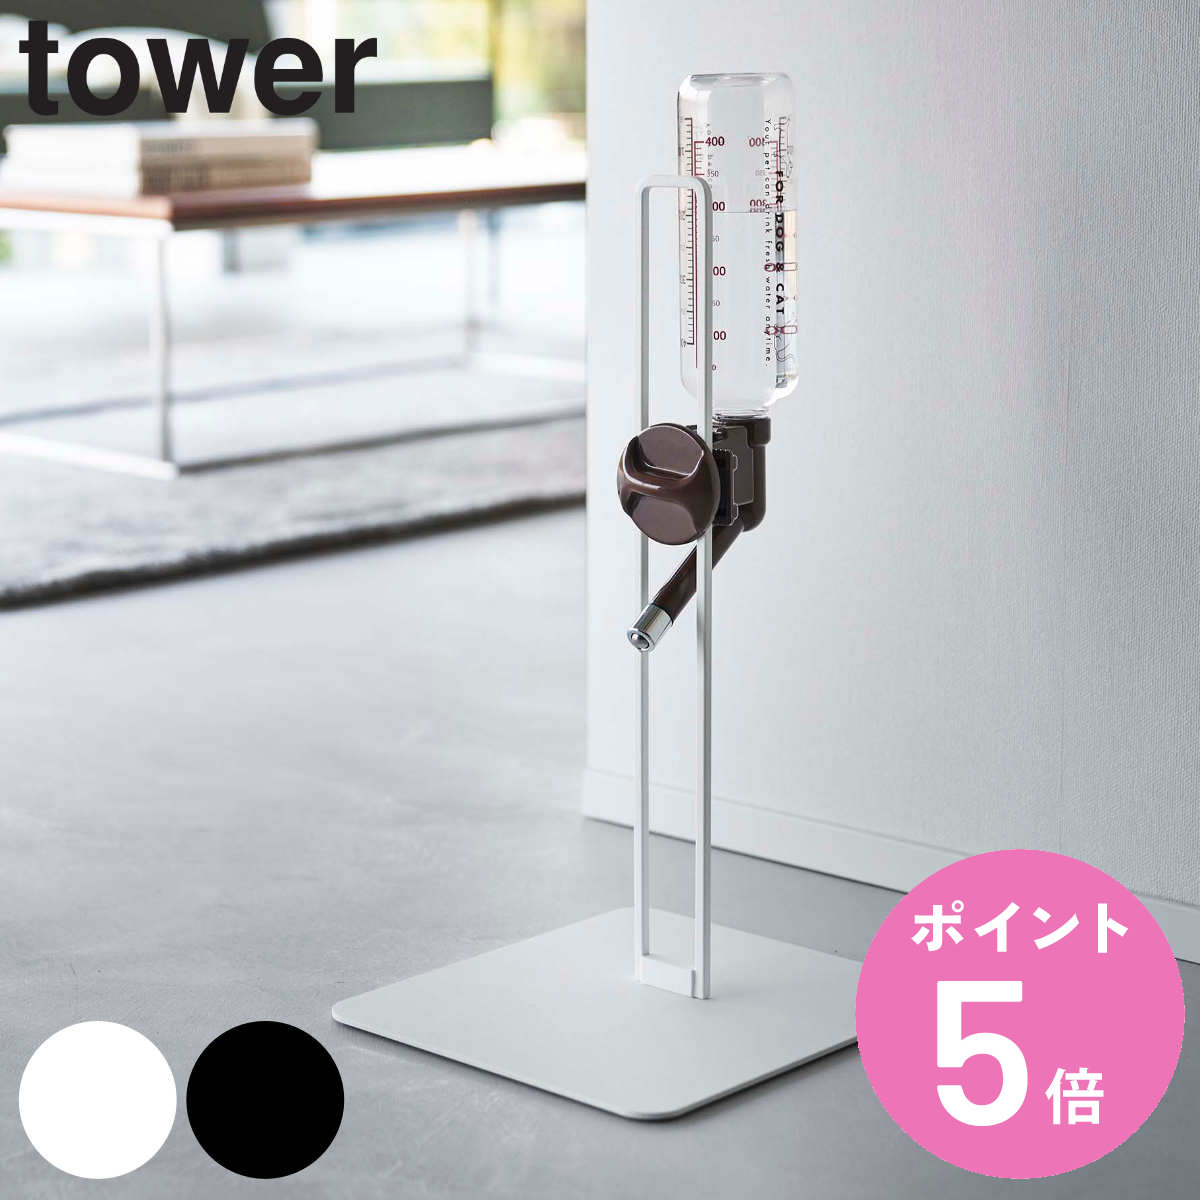 山崎実業 tower ペット用ボトル給水器スタンド タワー （ 給水器 給水ボトル ウォータースタンド ペット給水器 水飲み器 犬 猫 高さ調節